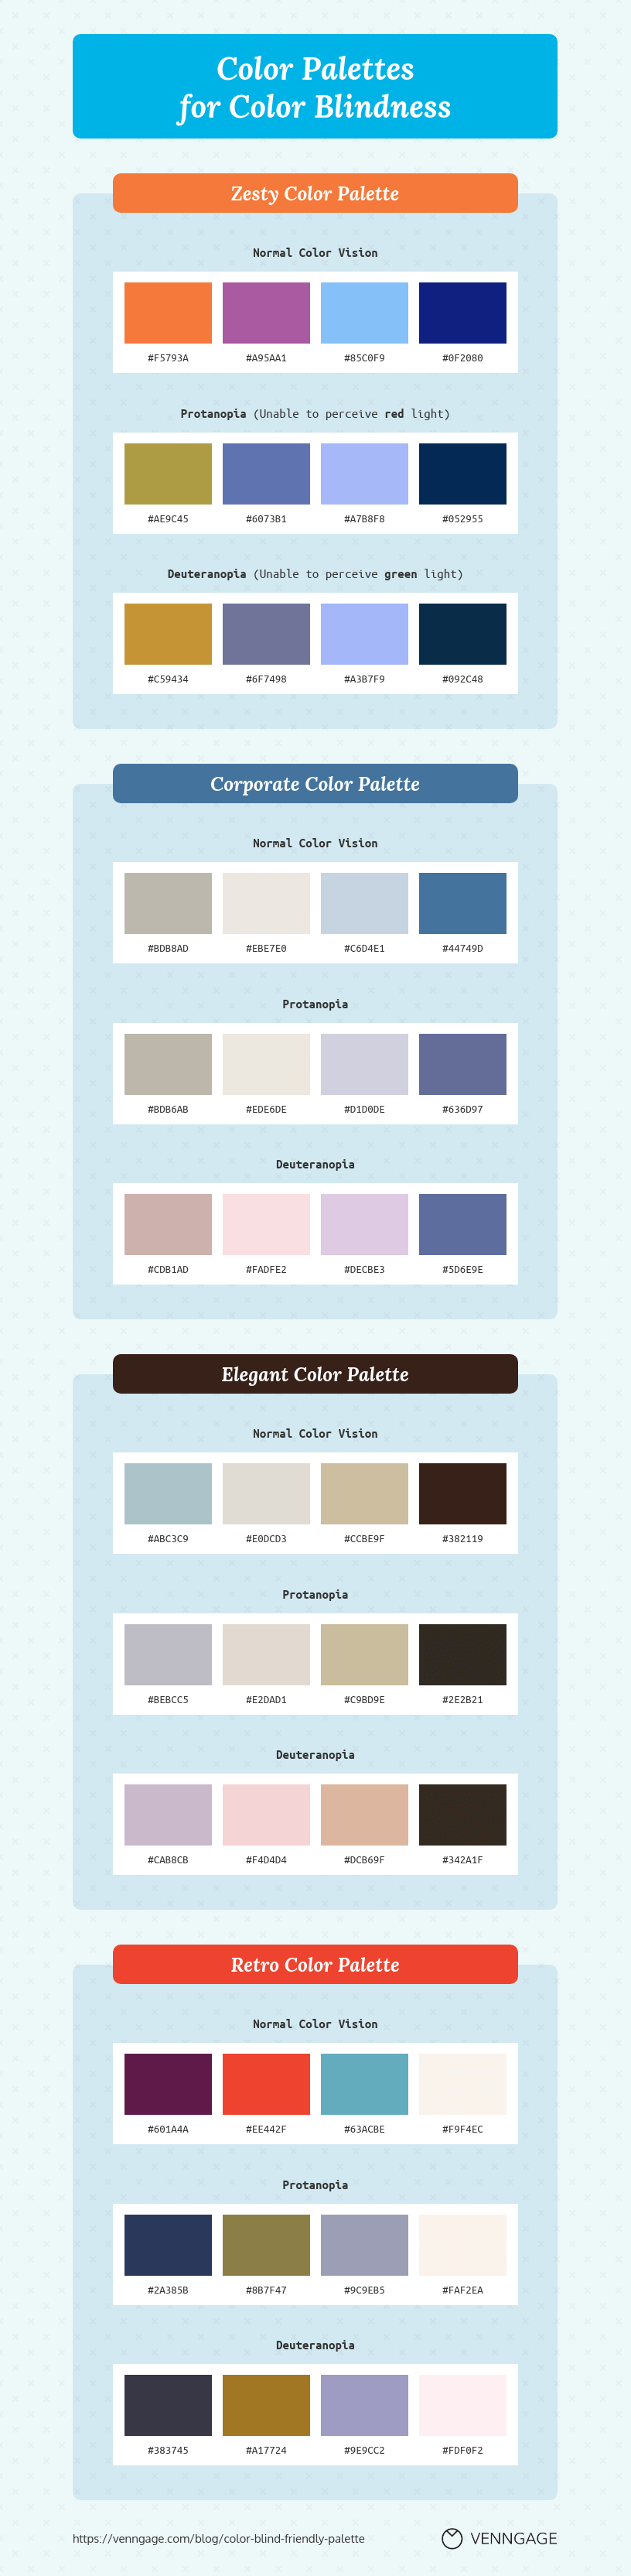 Color blind friendly color palette